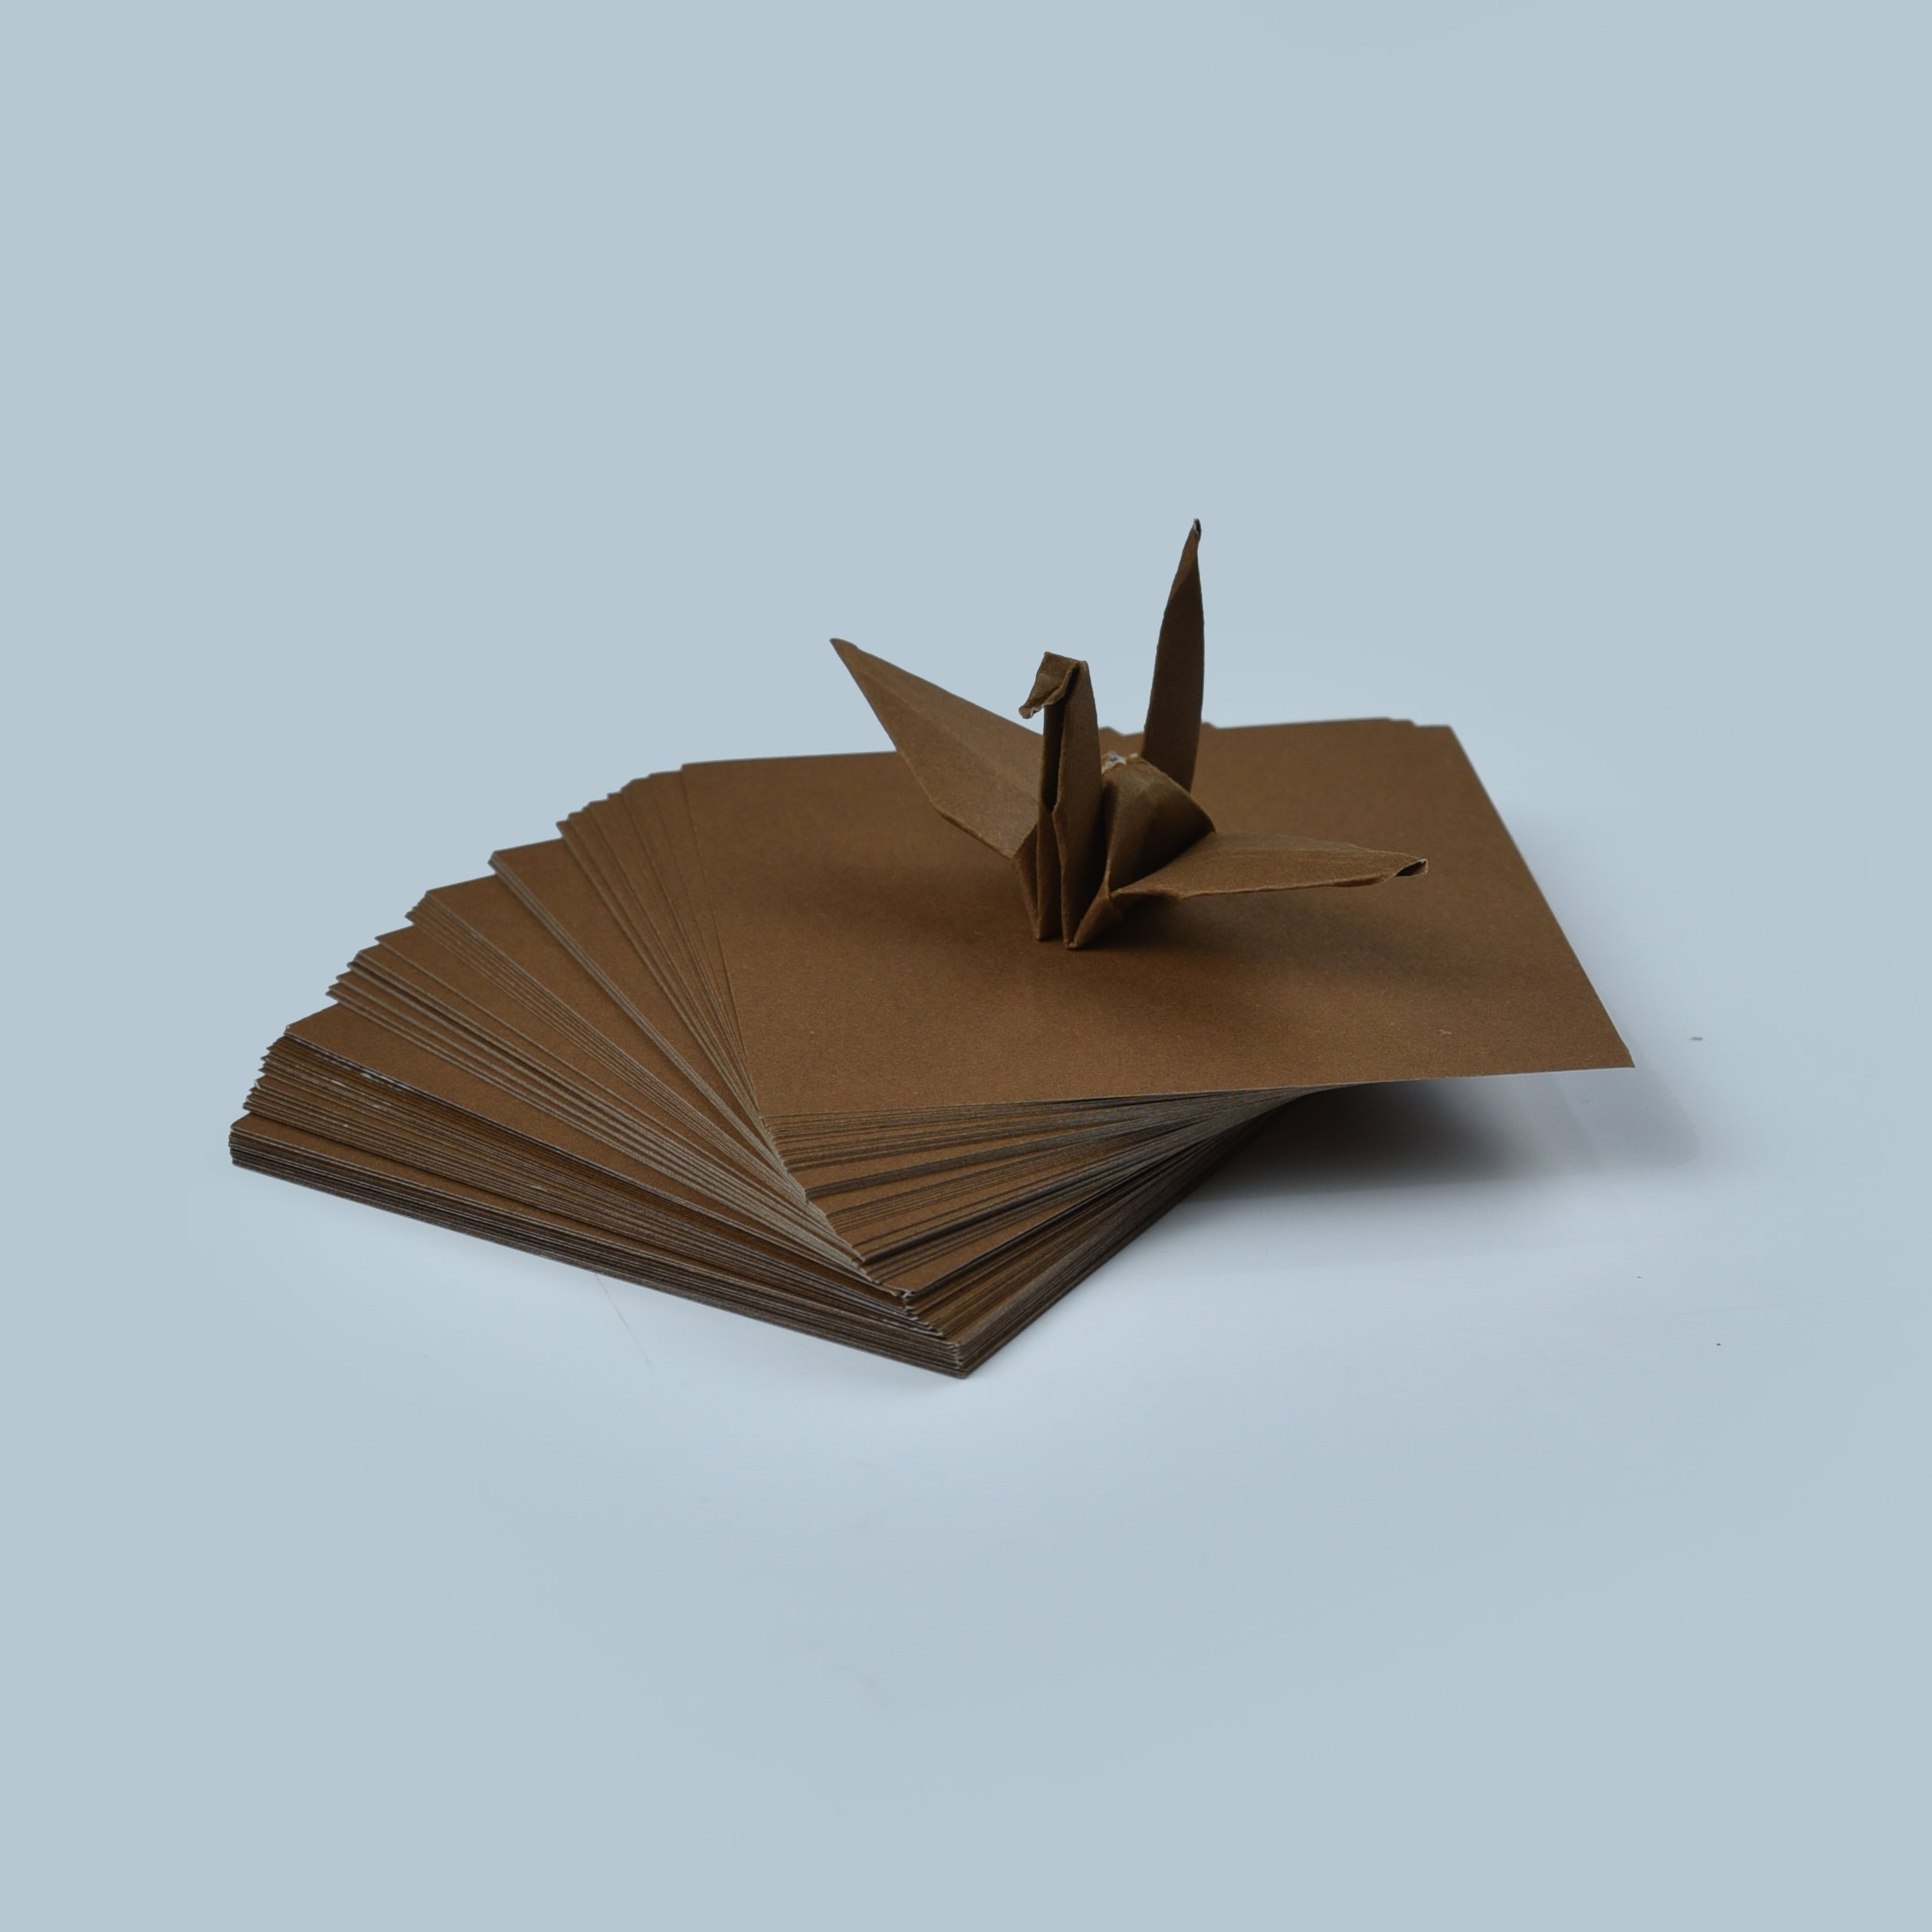 100 fogli di carta origami marrone - 3x3 pollici - Confezione di carta quadrata per piegare, gru origami e decorazioni - S07